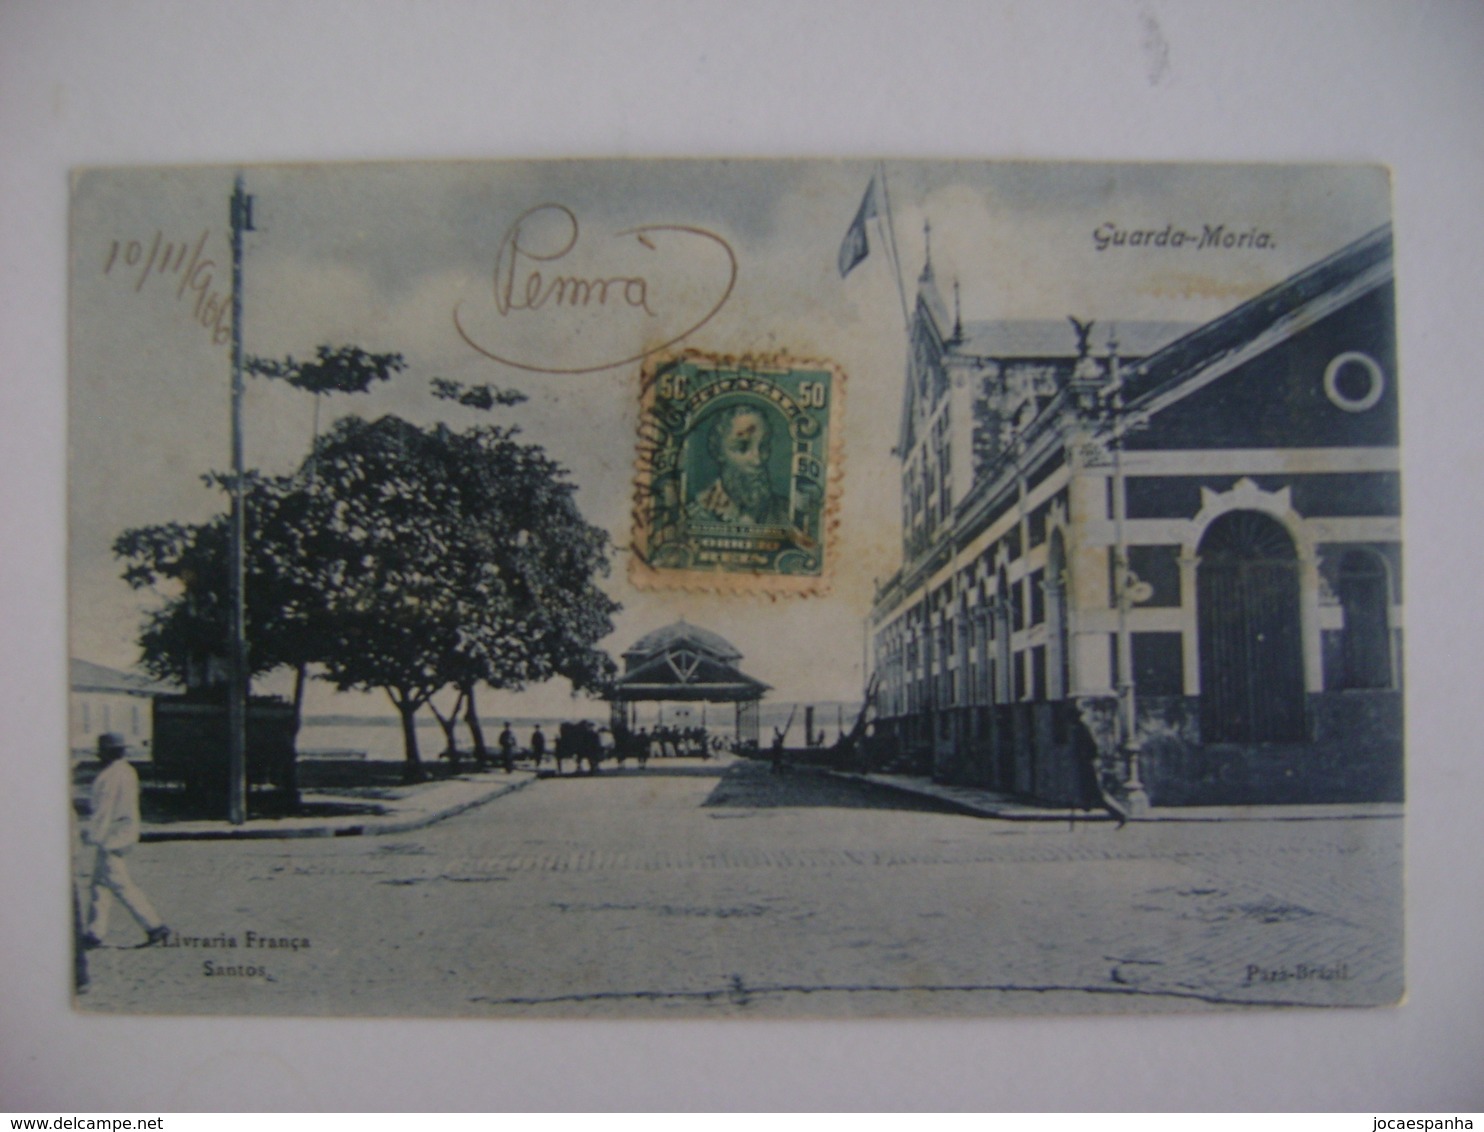 BRAZIL / BRASIL - POST CARD FOR PARA "GUARDA - MORIA" 1906 IN THE STATE - Belém